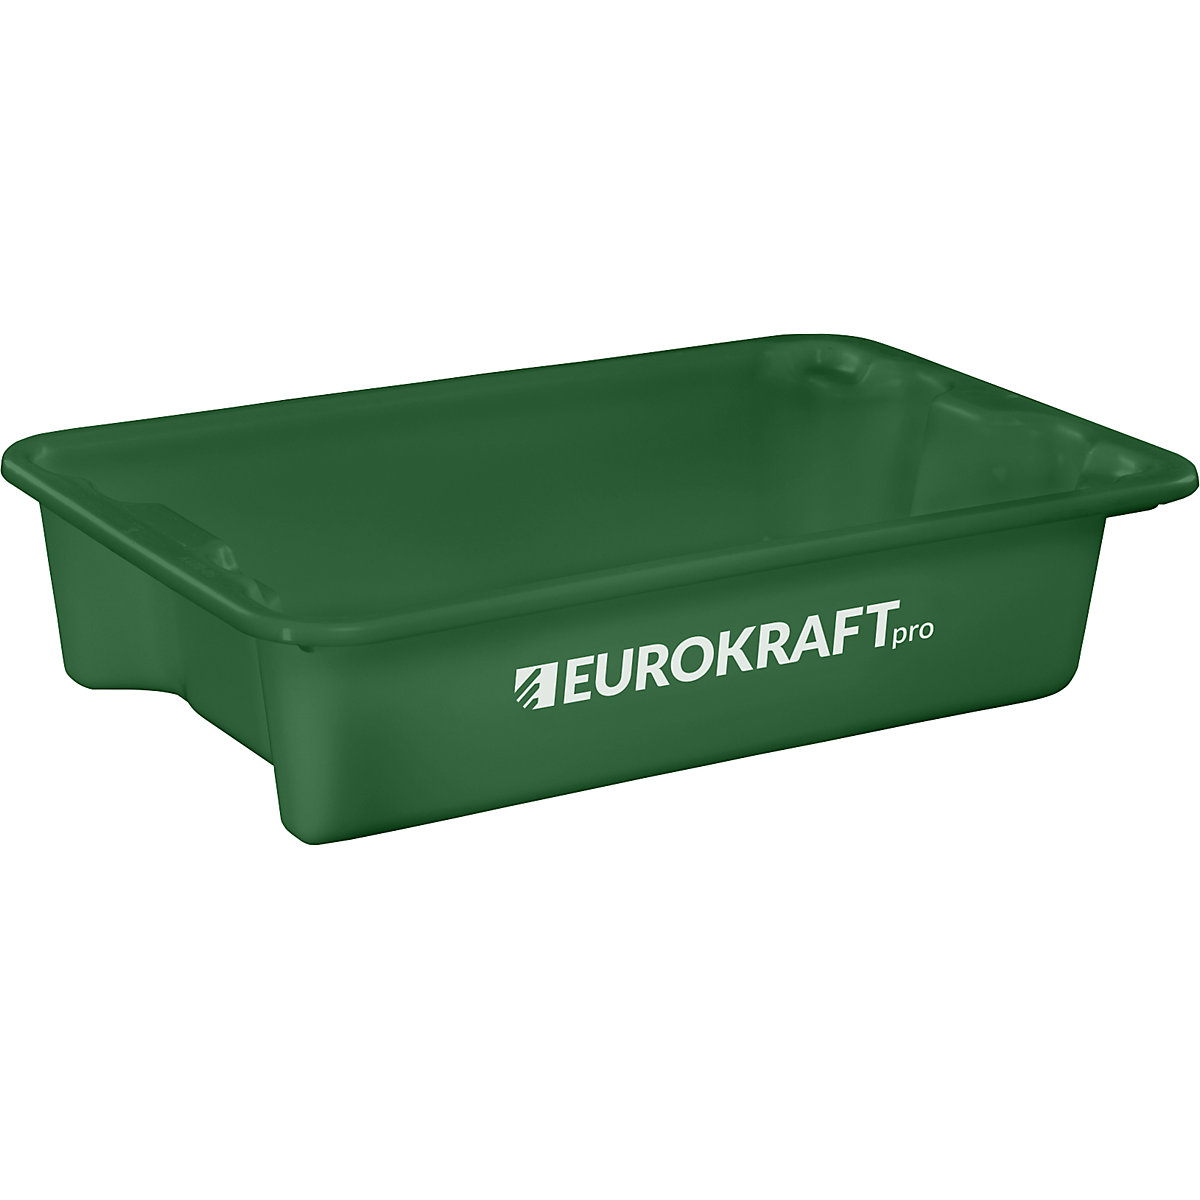 EUROKRAFTpro – Obrotowy pojemnik do ustawiania w stos z polipropylenu dopuszczonego do kontaktu z żywnością, poj. 18 l, opak. 3 szt., ścianki i dno zamknięte, zielone